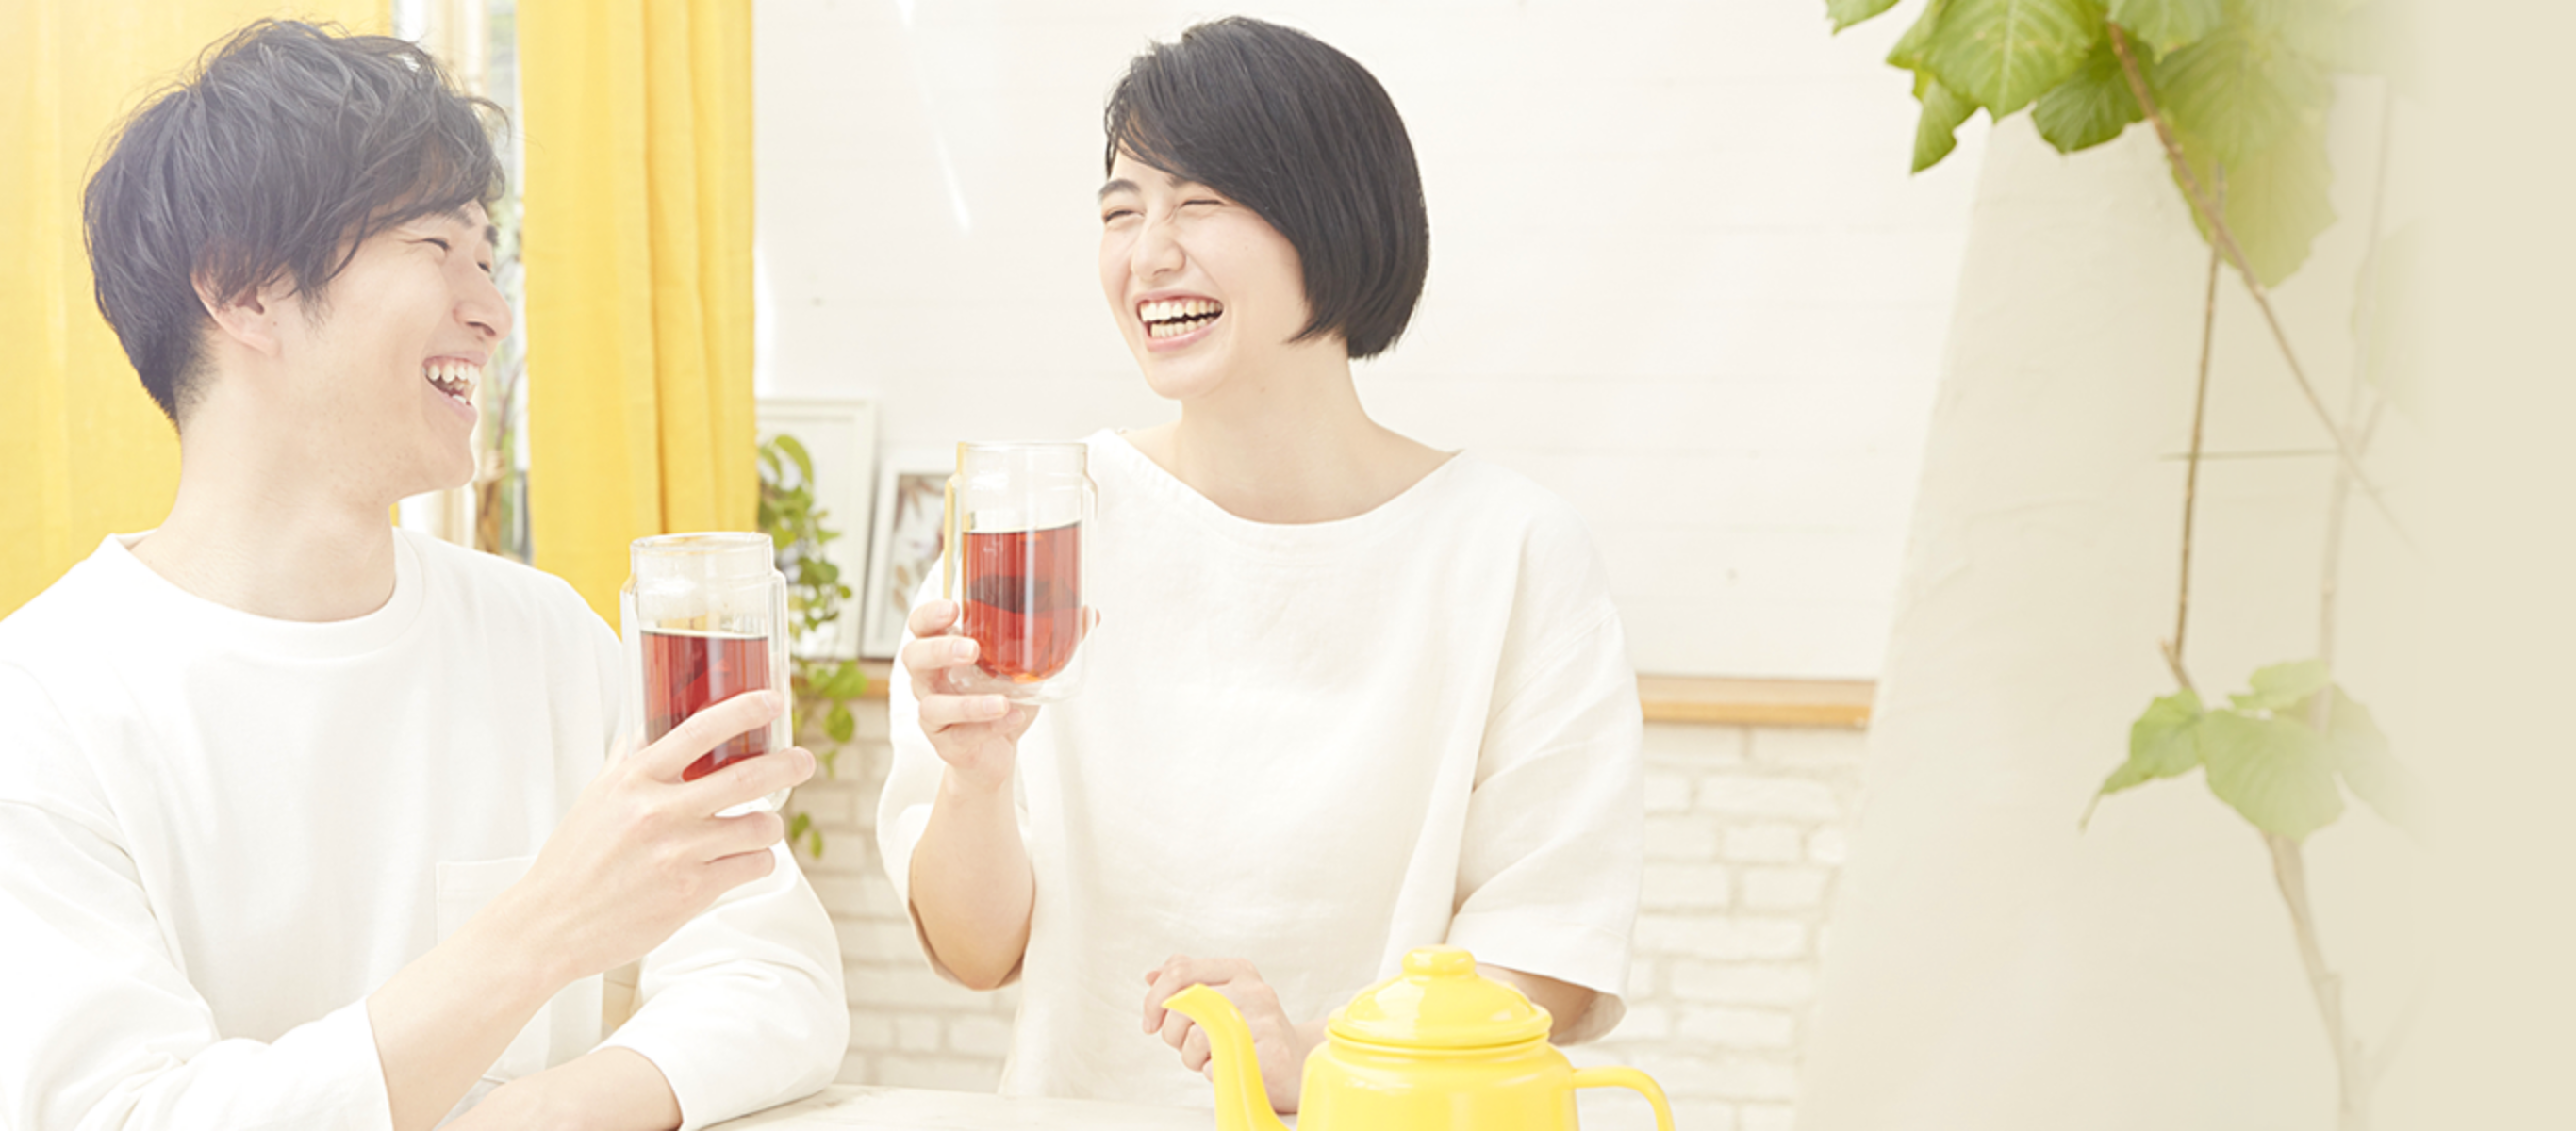 紅茶がより良い 毎日をサポート | Lipton Japan